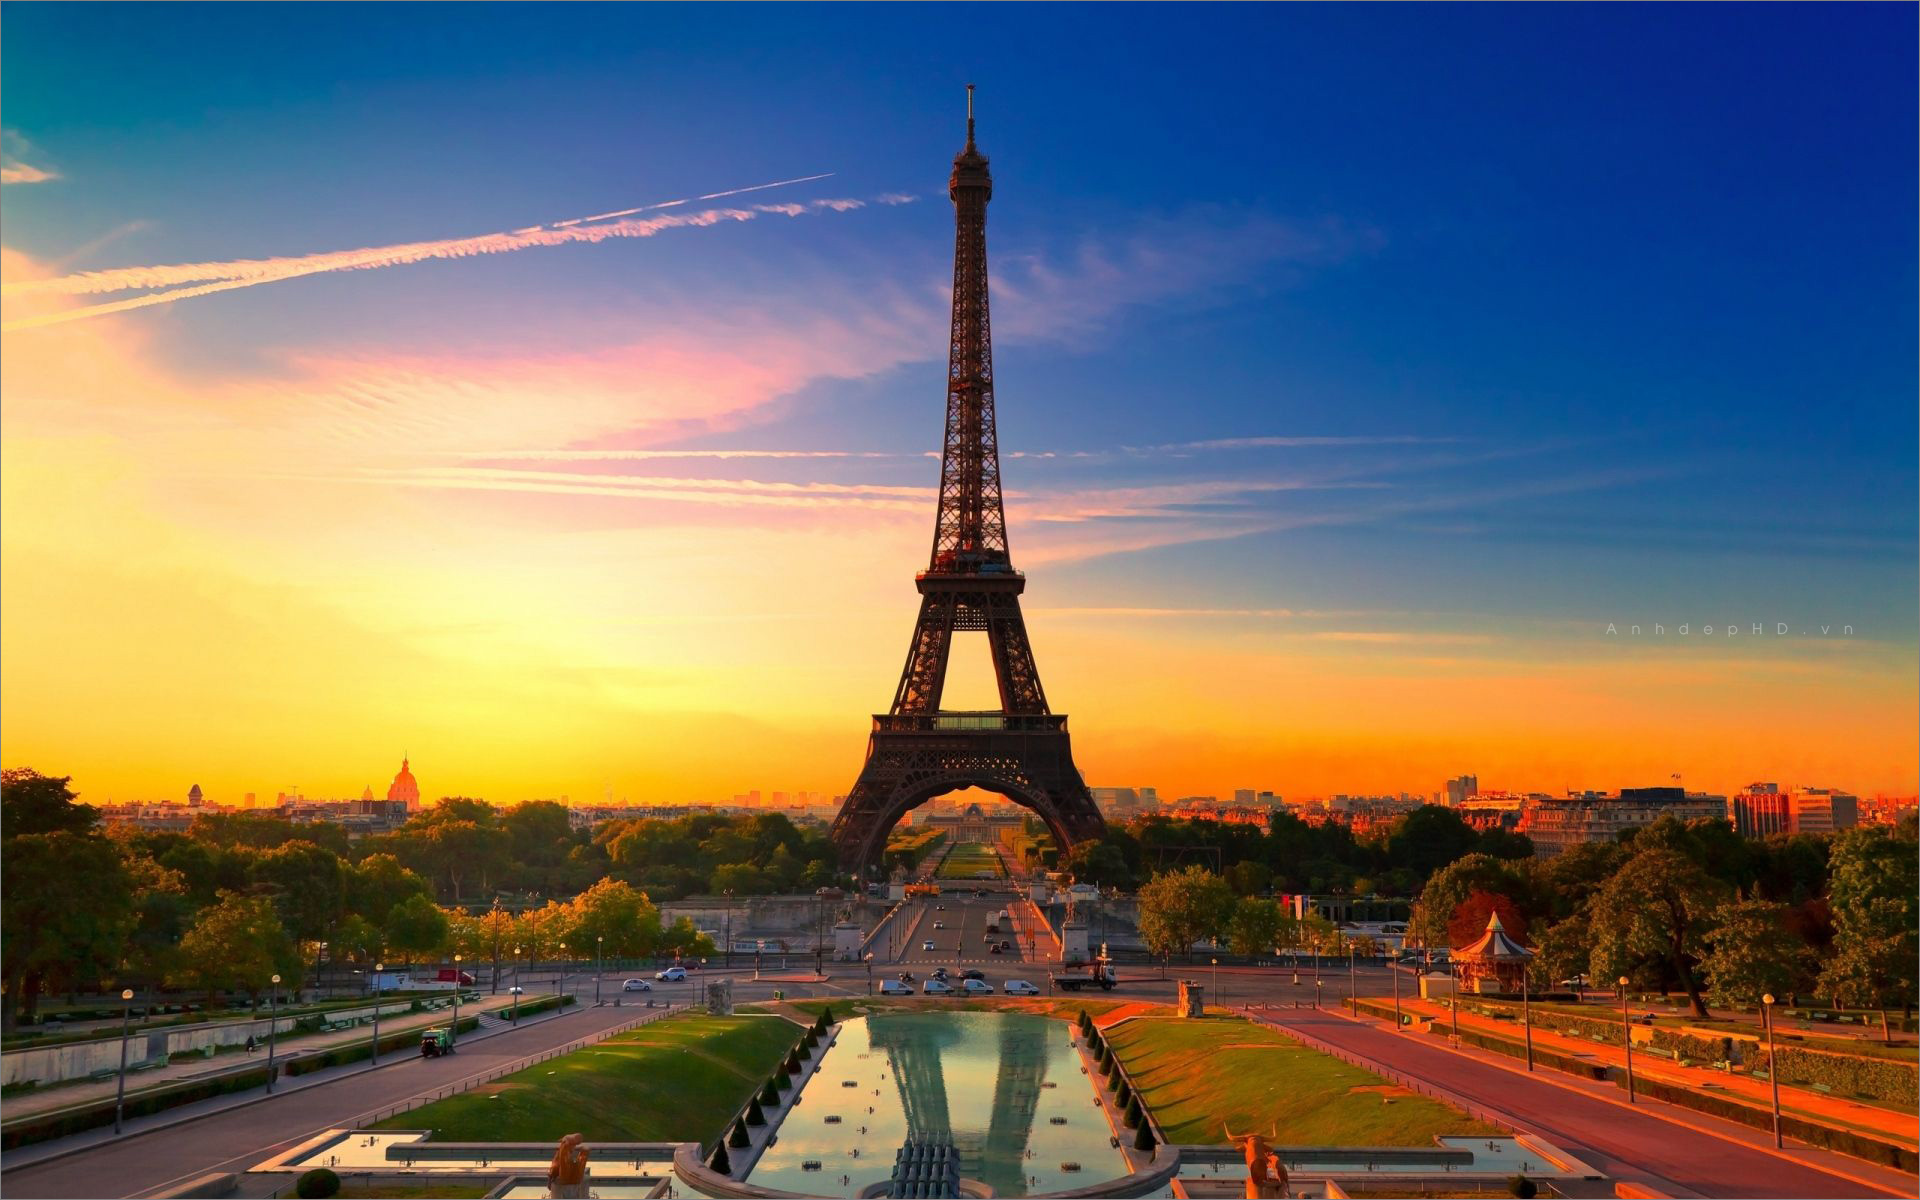 Nổi tiếng với tháp Eiffel là biểu tượng của sức sống và nghĩa cử. Hãy cùng thưởng thức những bức ảnh đẹp về tháp Eiffel để cảm nhận thêm tình yêu đối với thành phố xinh đẹp này và những ước mơ tươi sáng mà nó đại diện.